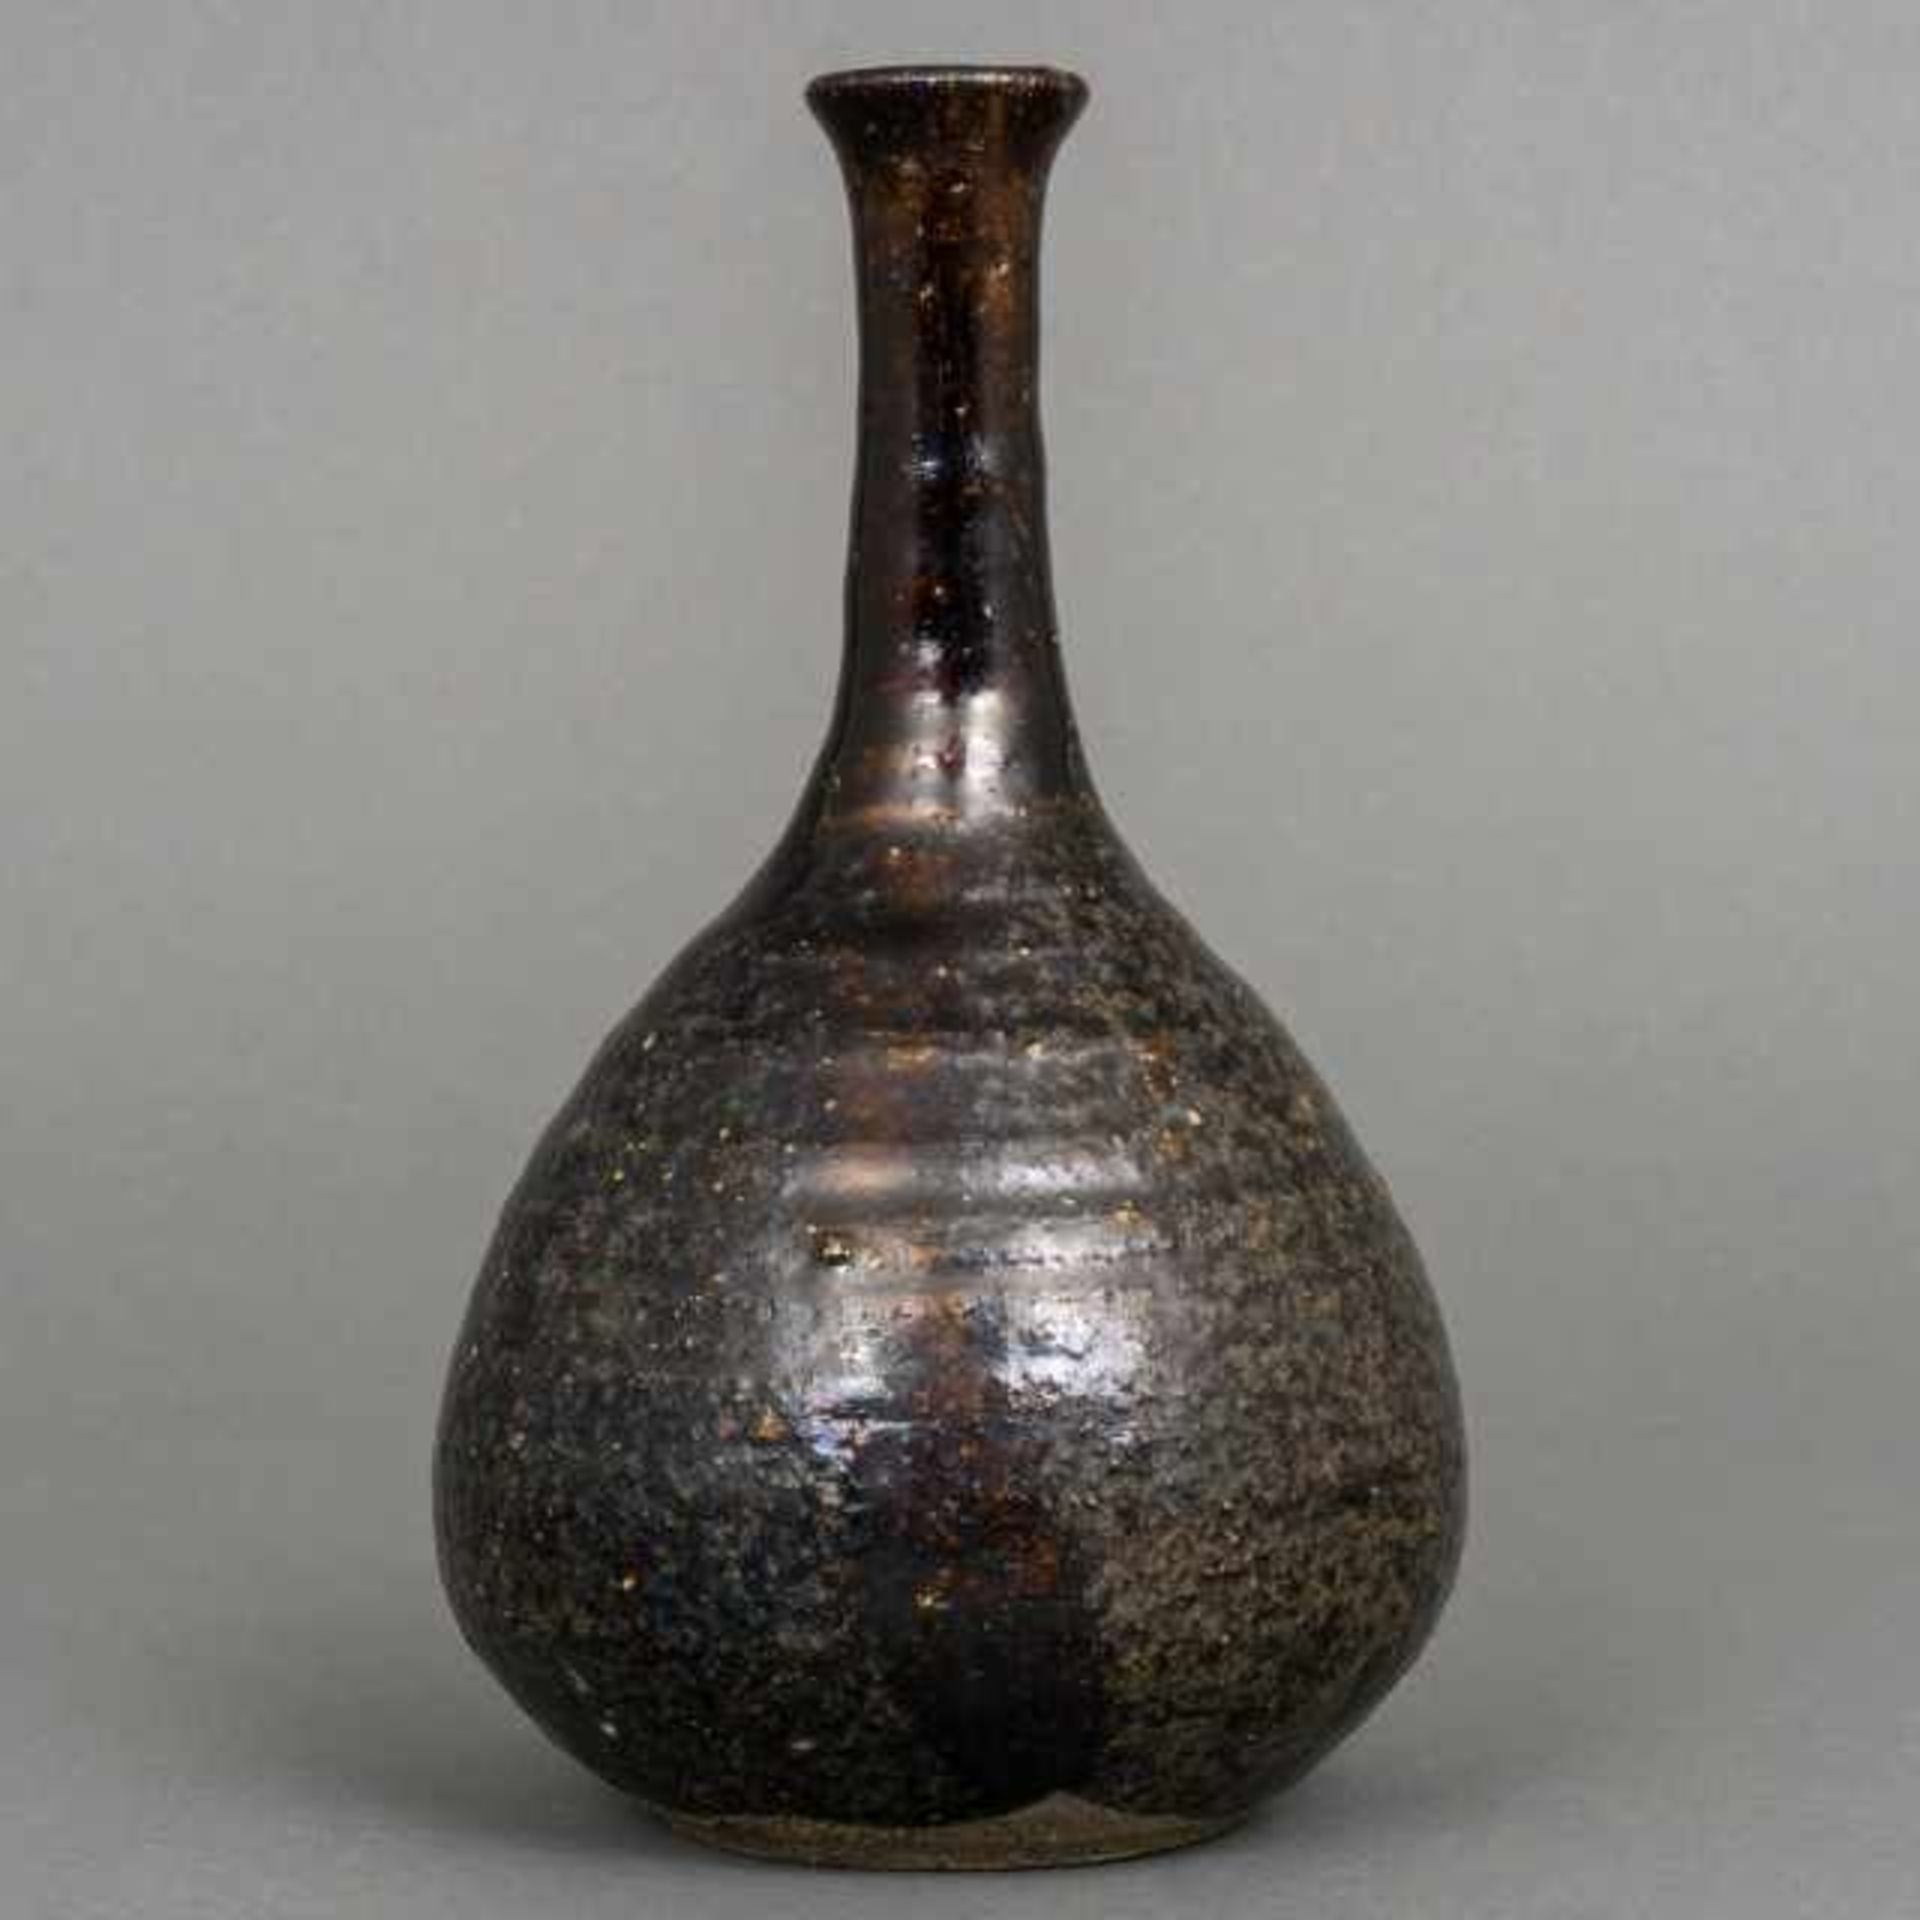 Seto ware bottle vase with dark brown glaze, Japan, 19th century, provenance: Kunsthandel - Bild 4 aus 6